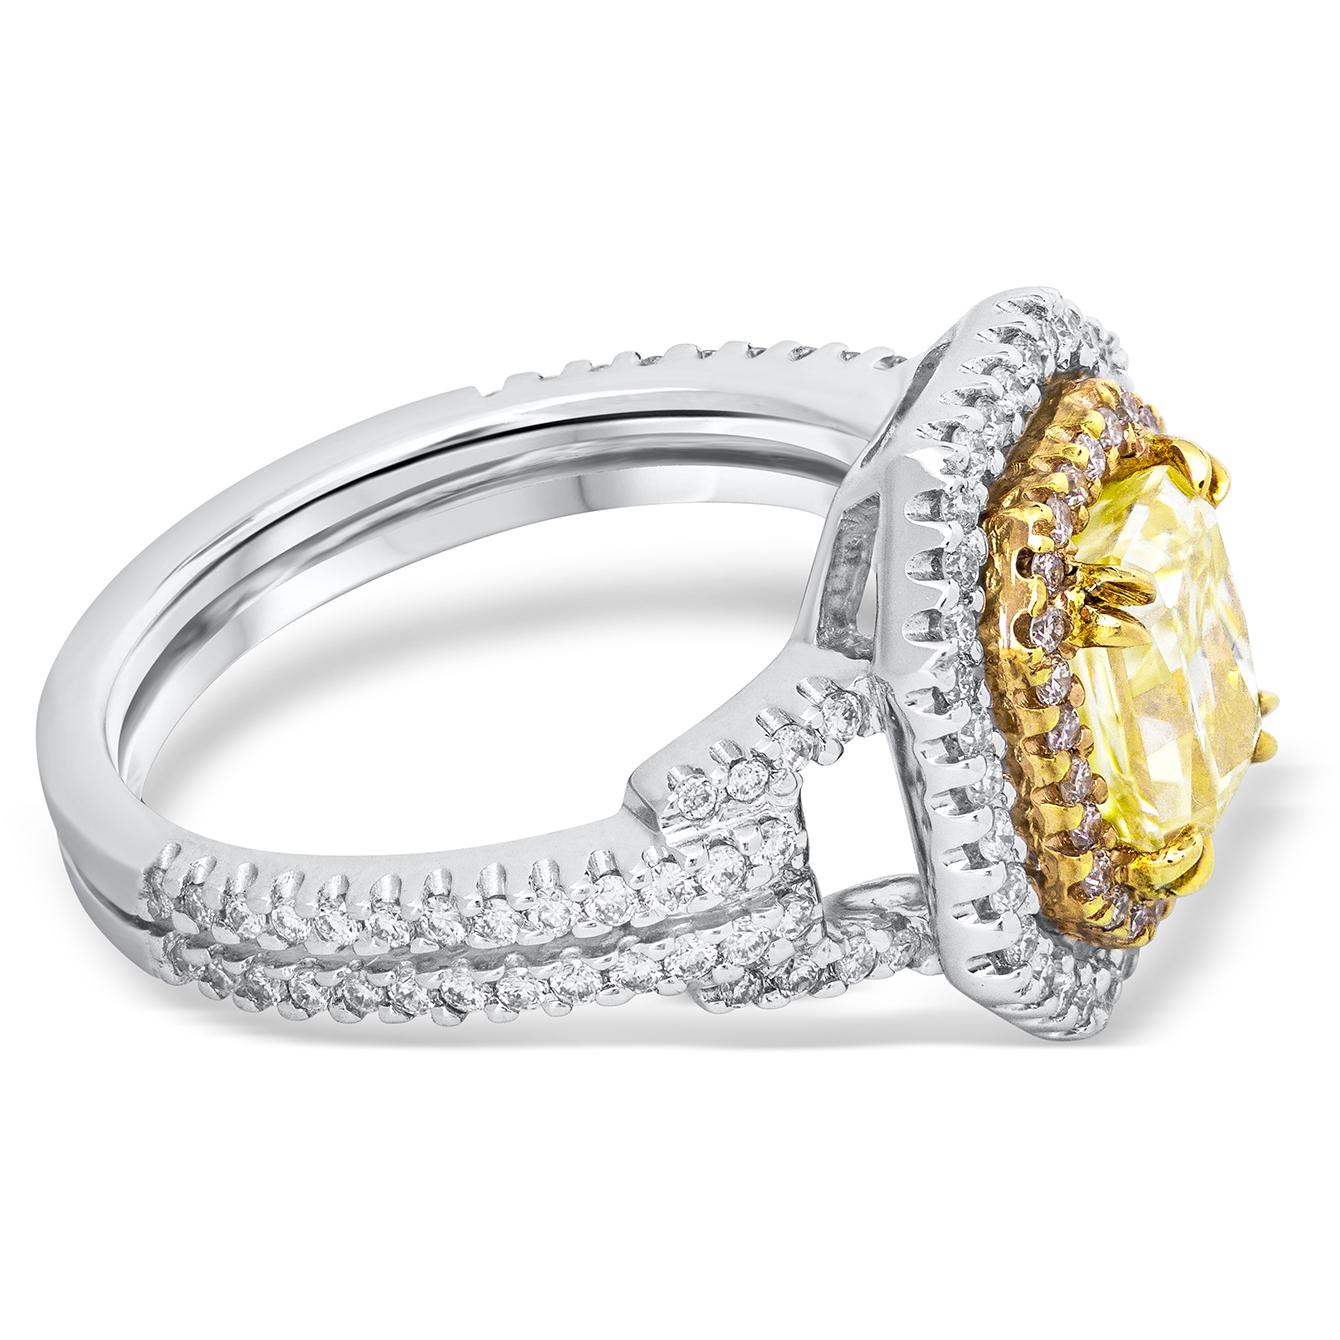 Dieser schöne und farbenfrohe Verlobungsring präsentiert 1,50 Karat strahlend geschliffenen Diamanten in der Mitte, die GIA zertifiziert als Fancy Light Yellow Farbe und SI1 in Klarheit. Um das Zentrum herum befinden sich zwei achteckige Halos, die